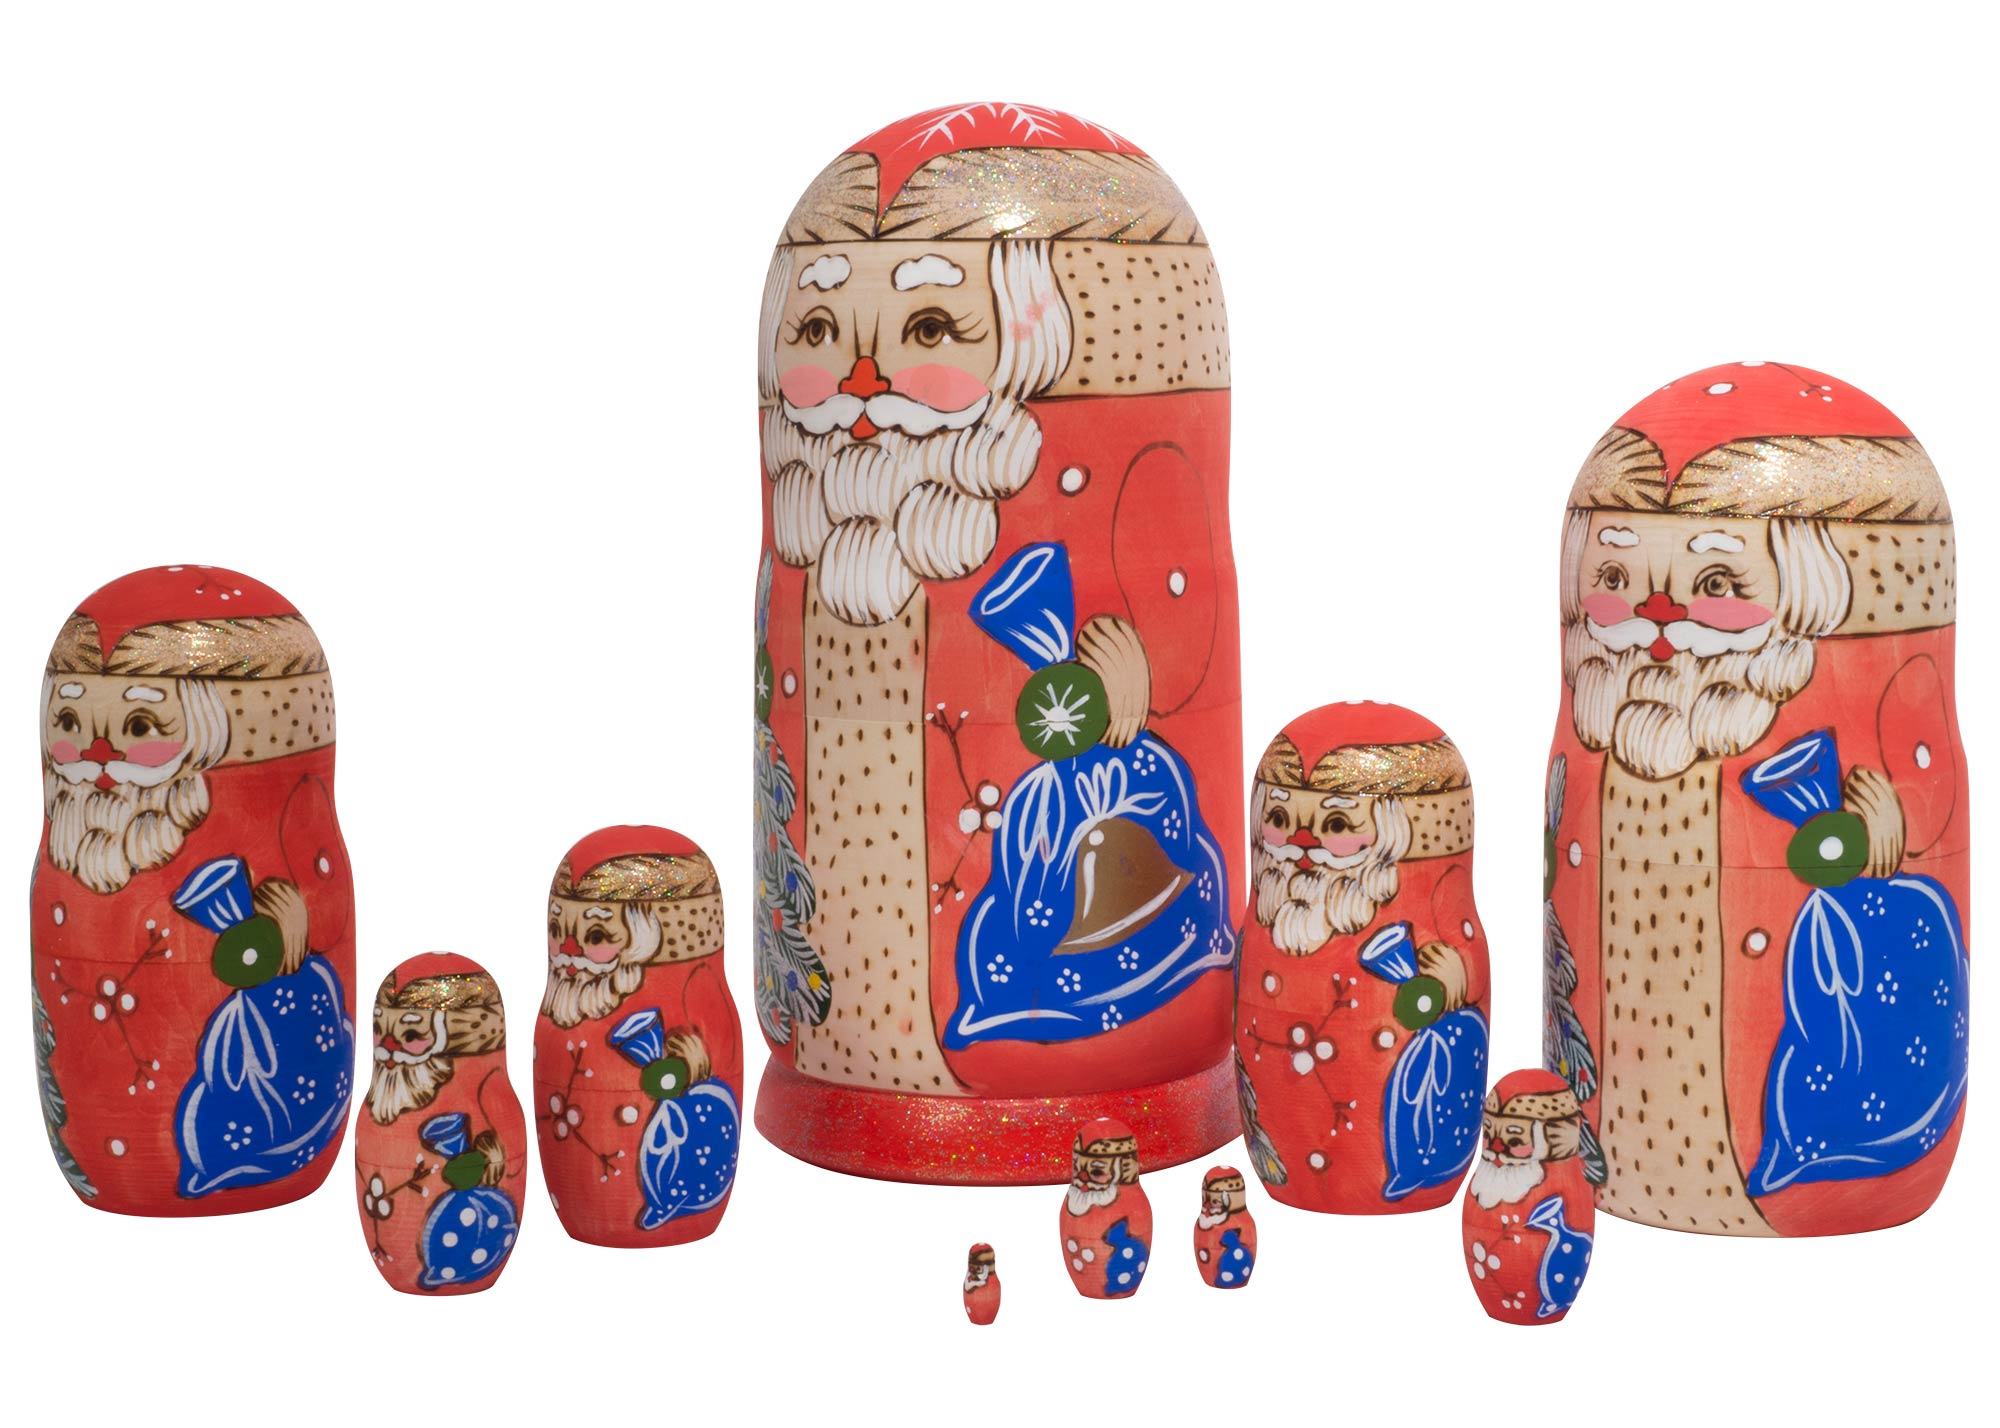 Buy Матрешка "Дед Мороз" с выжиганием 10 мест 25 см at GoldenCockerel.com